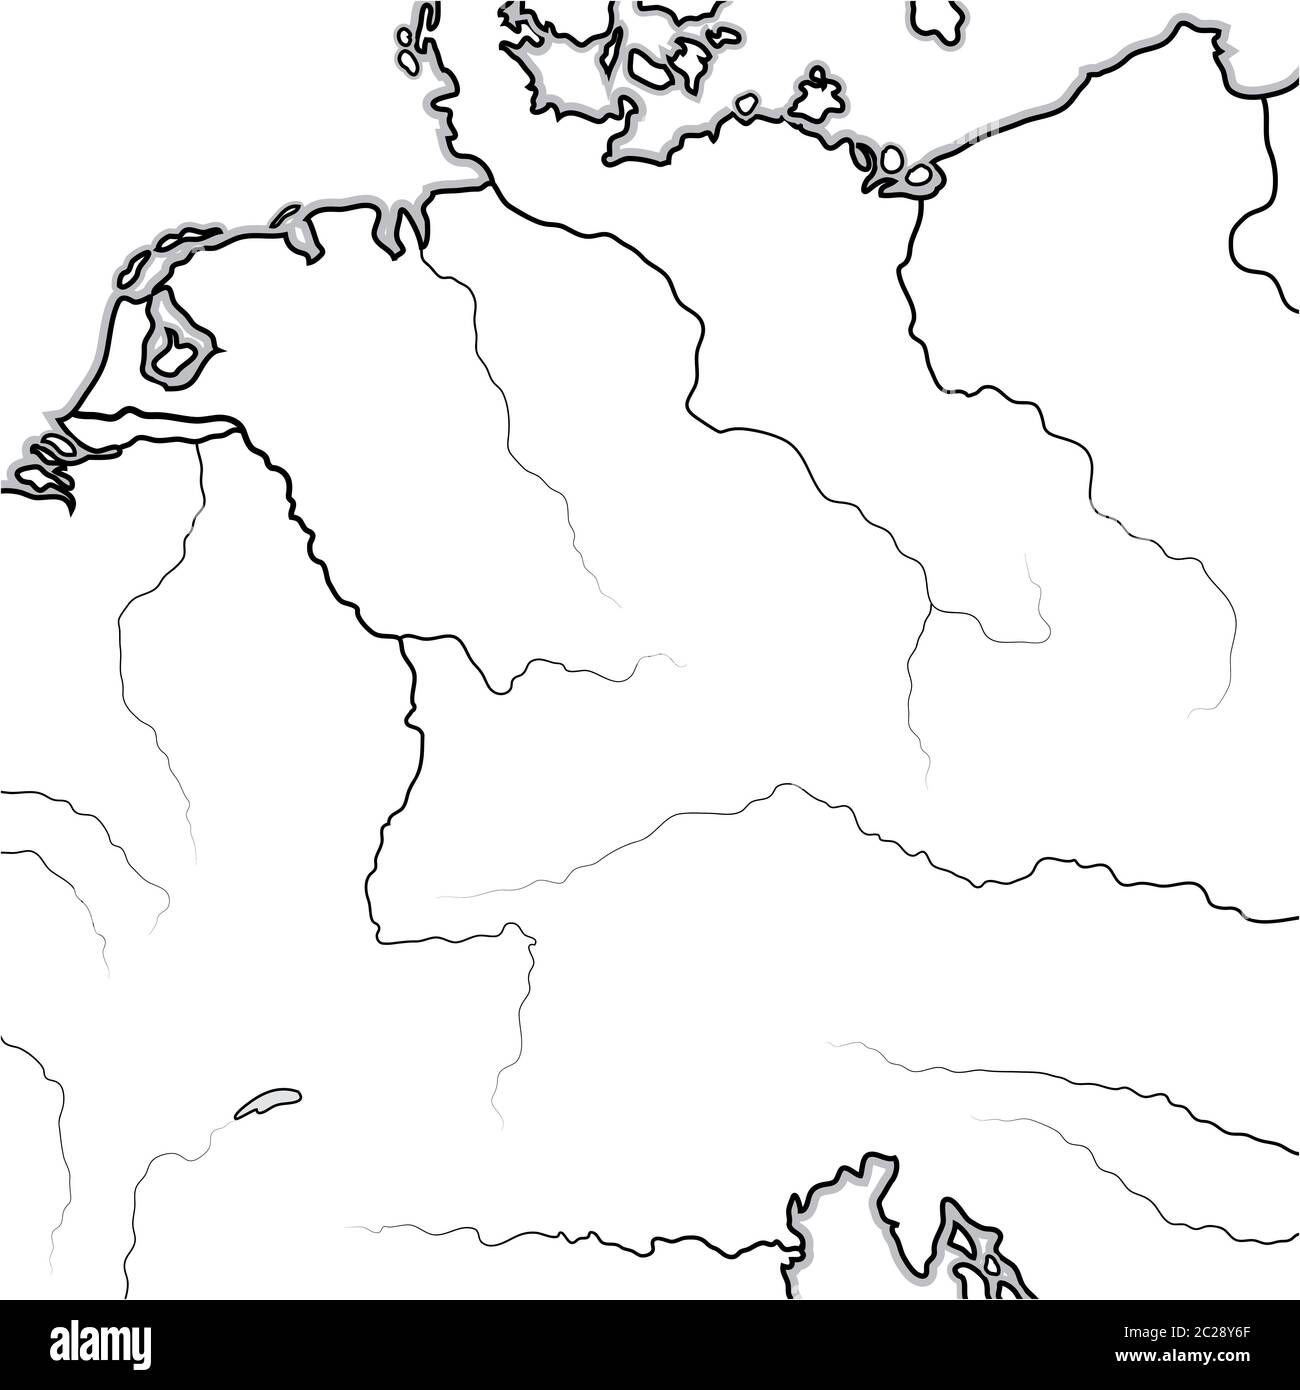 Mappa delle terre TEDESCHE: Germania, Sassonia, Baviera, Teutonia, Prussia, Austria. Grafico geografico. Foto Stock